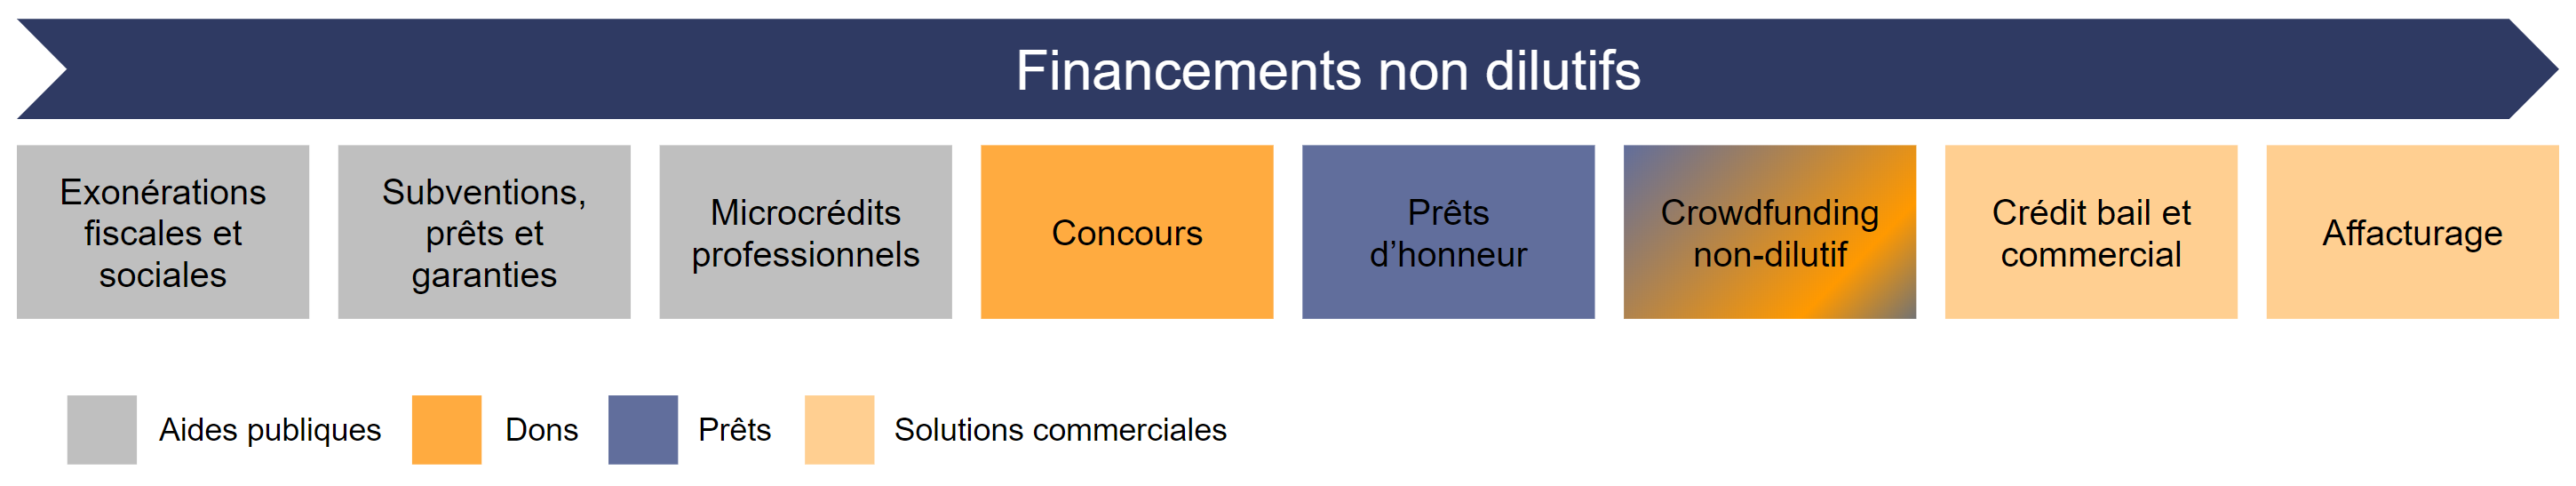 financements_non_dilutifs.png